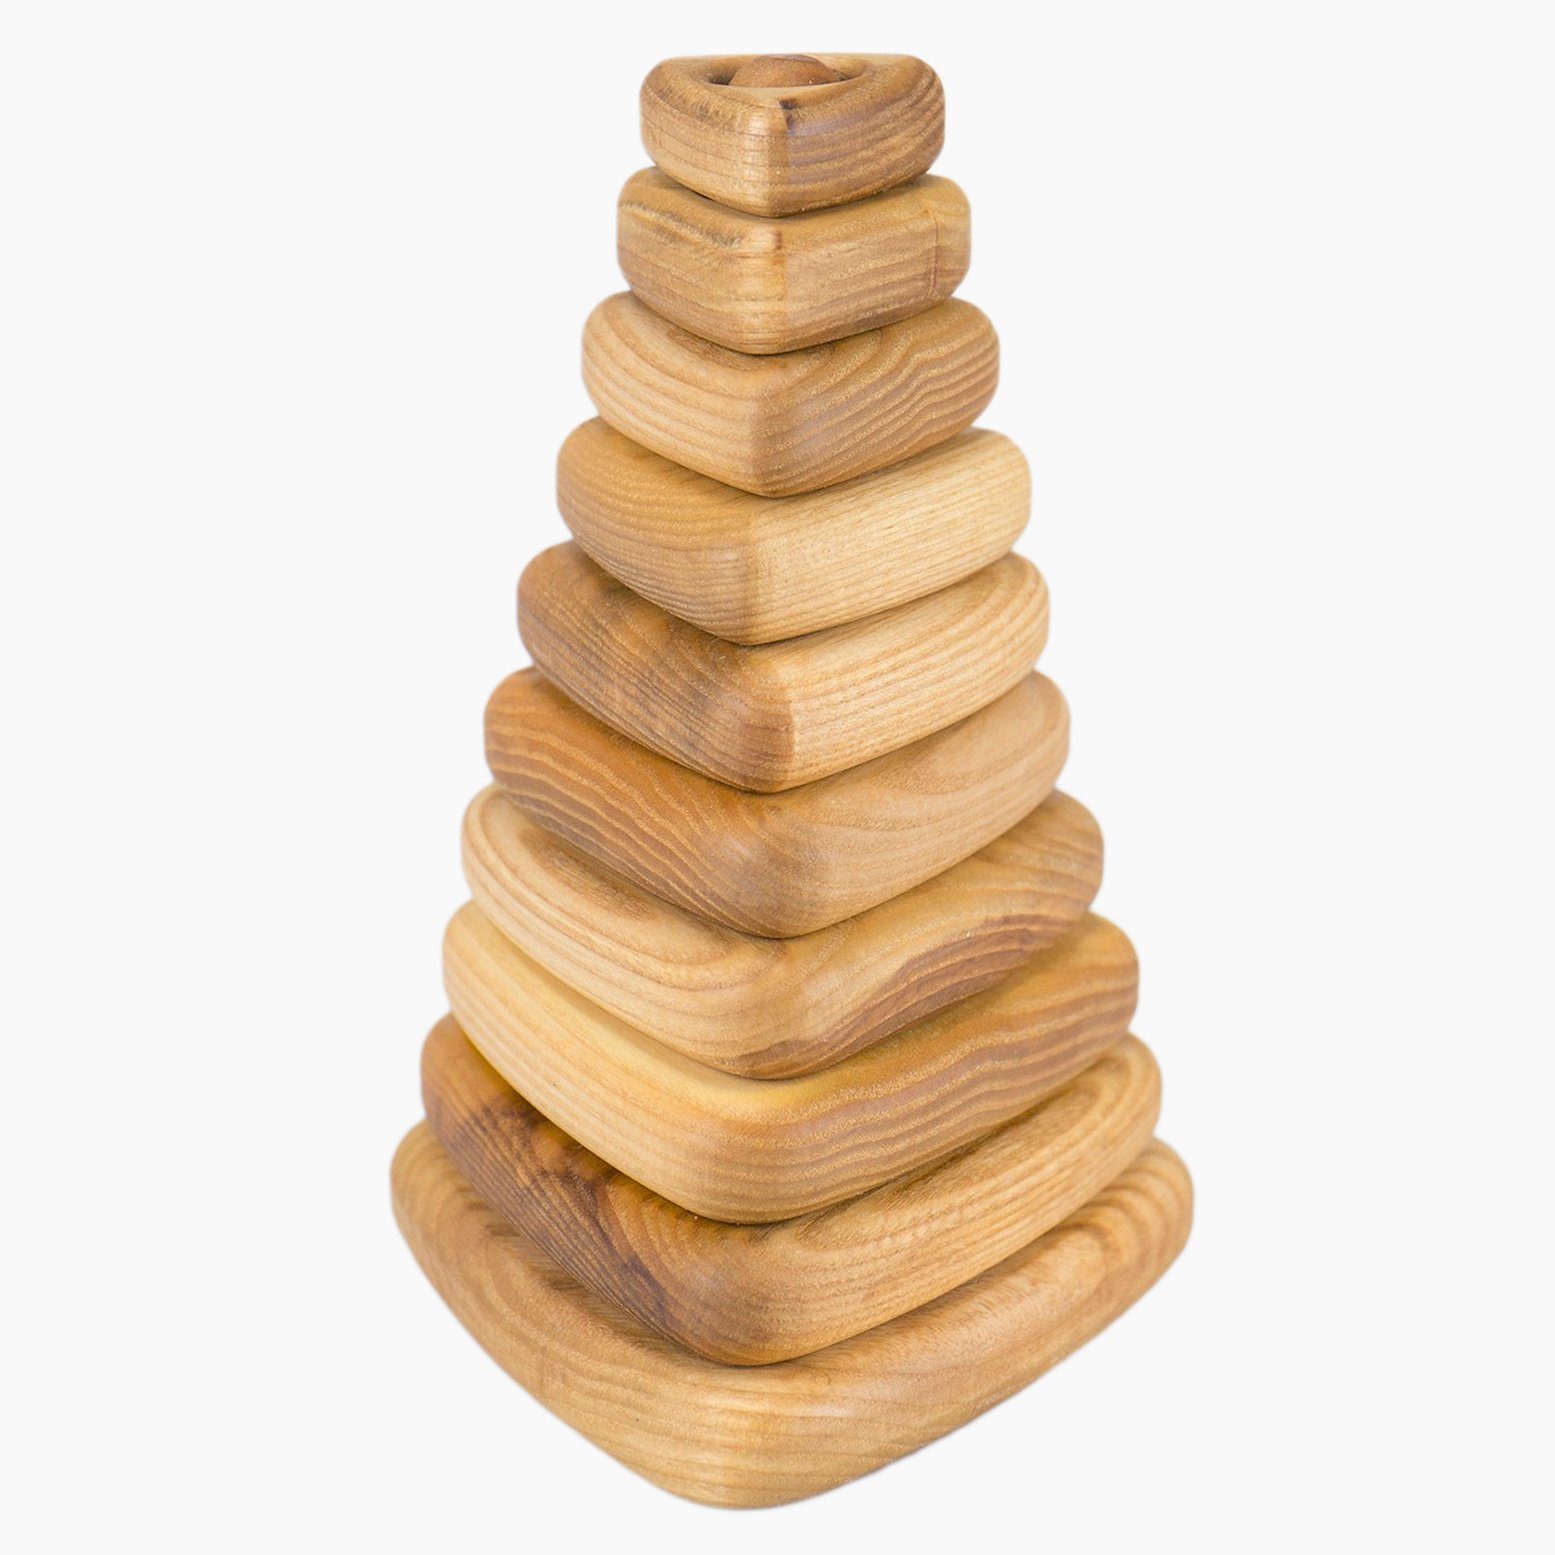 Lotes Toys Stapelspielzeug Stapelturm aus Eschenholz - Pyramide 18,5 cm, (10-tlg), in einer kleinen Spielzeugmanufaktur von Hand gefertigt.